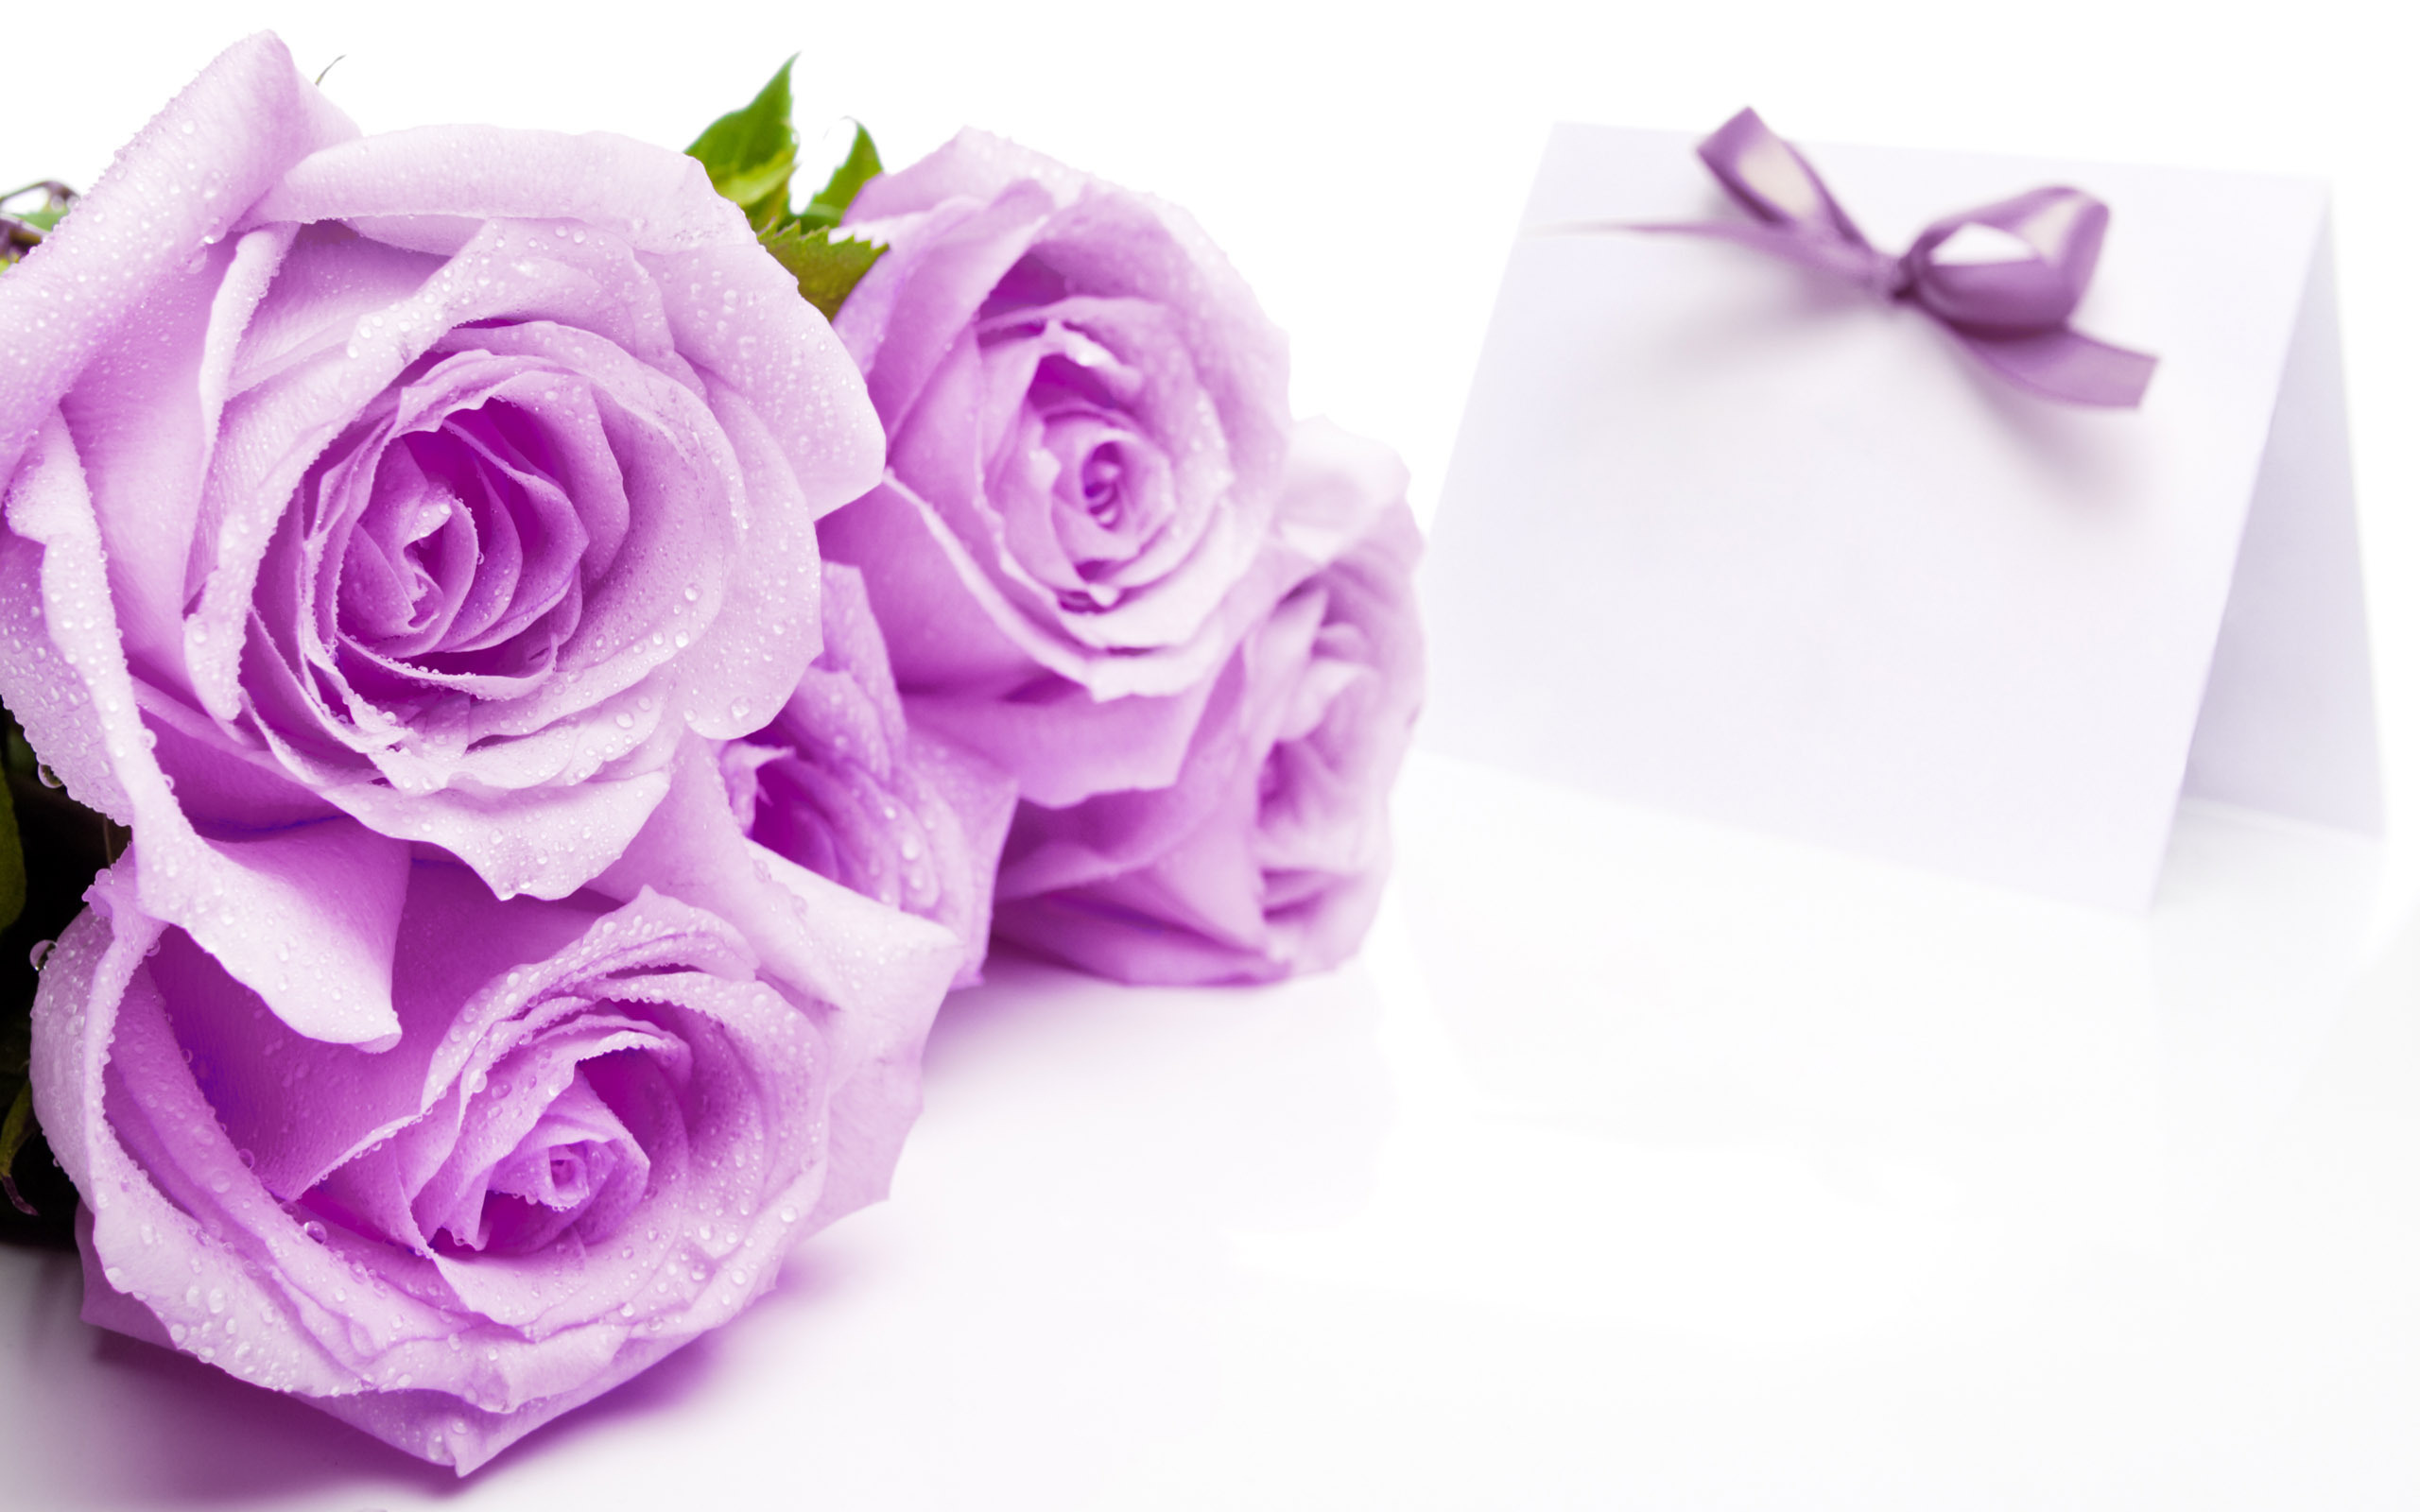 Rose HD Wallpaper: Mang đến vẻ đẹp tuyệt vời của hoa hồng tím, hình nền Rose HD sẽ làm cho màn hình của bạn trở nên sống động và tinh tế hơn bao giờ hết. Hãy đắm mình trong bộ sưu tập hình nền Rose HD để tận hưởng sự đẹp lung linh của hoa hồng tím.